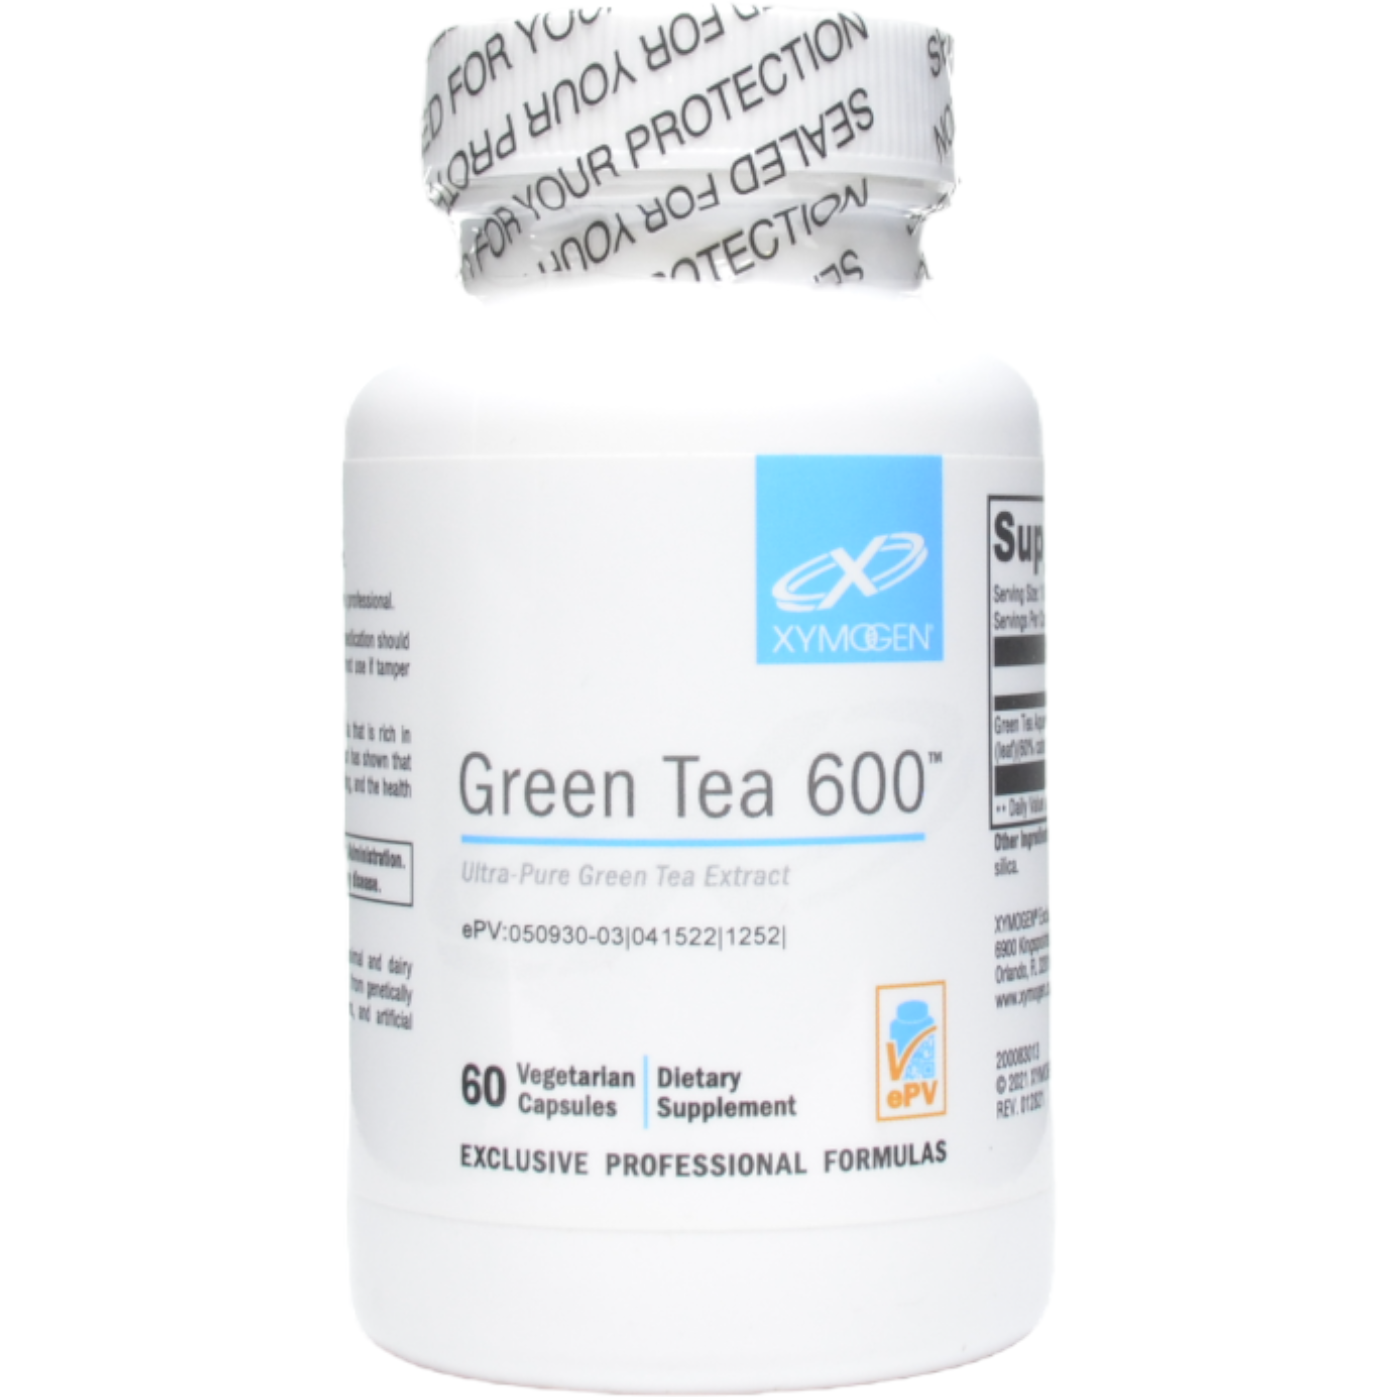 Xymogen Green Tea 600 60 Capsules